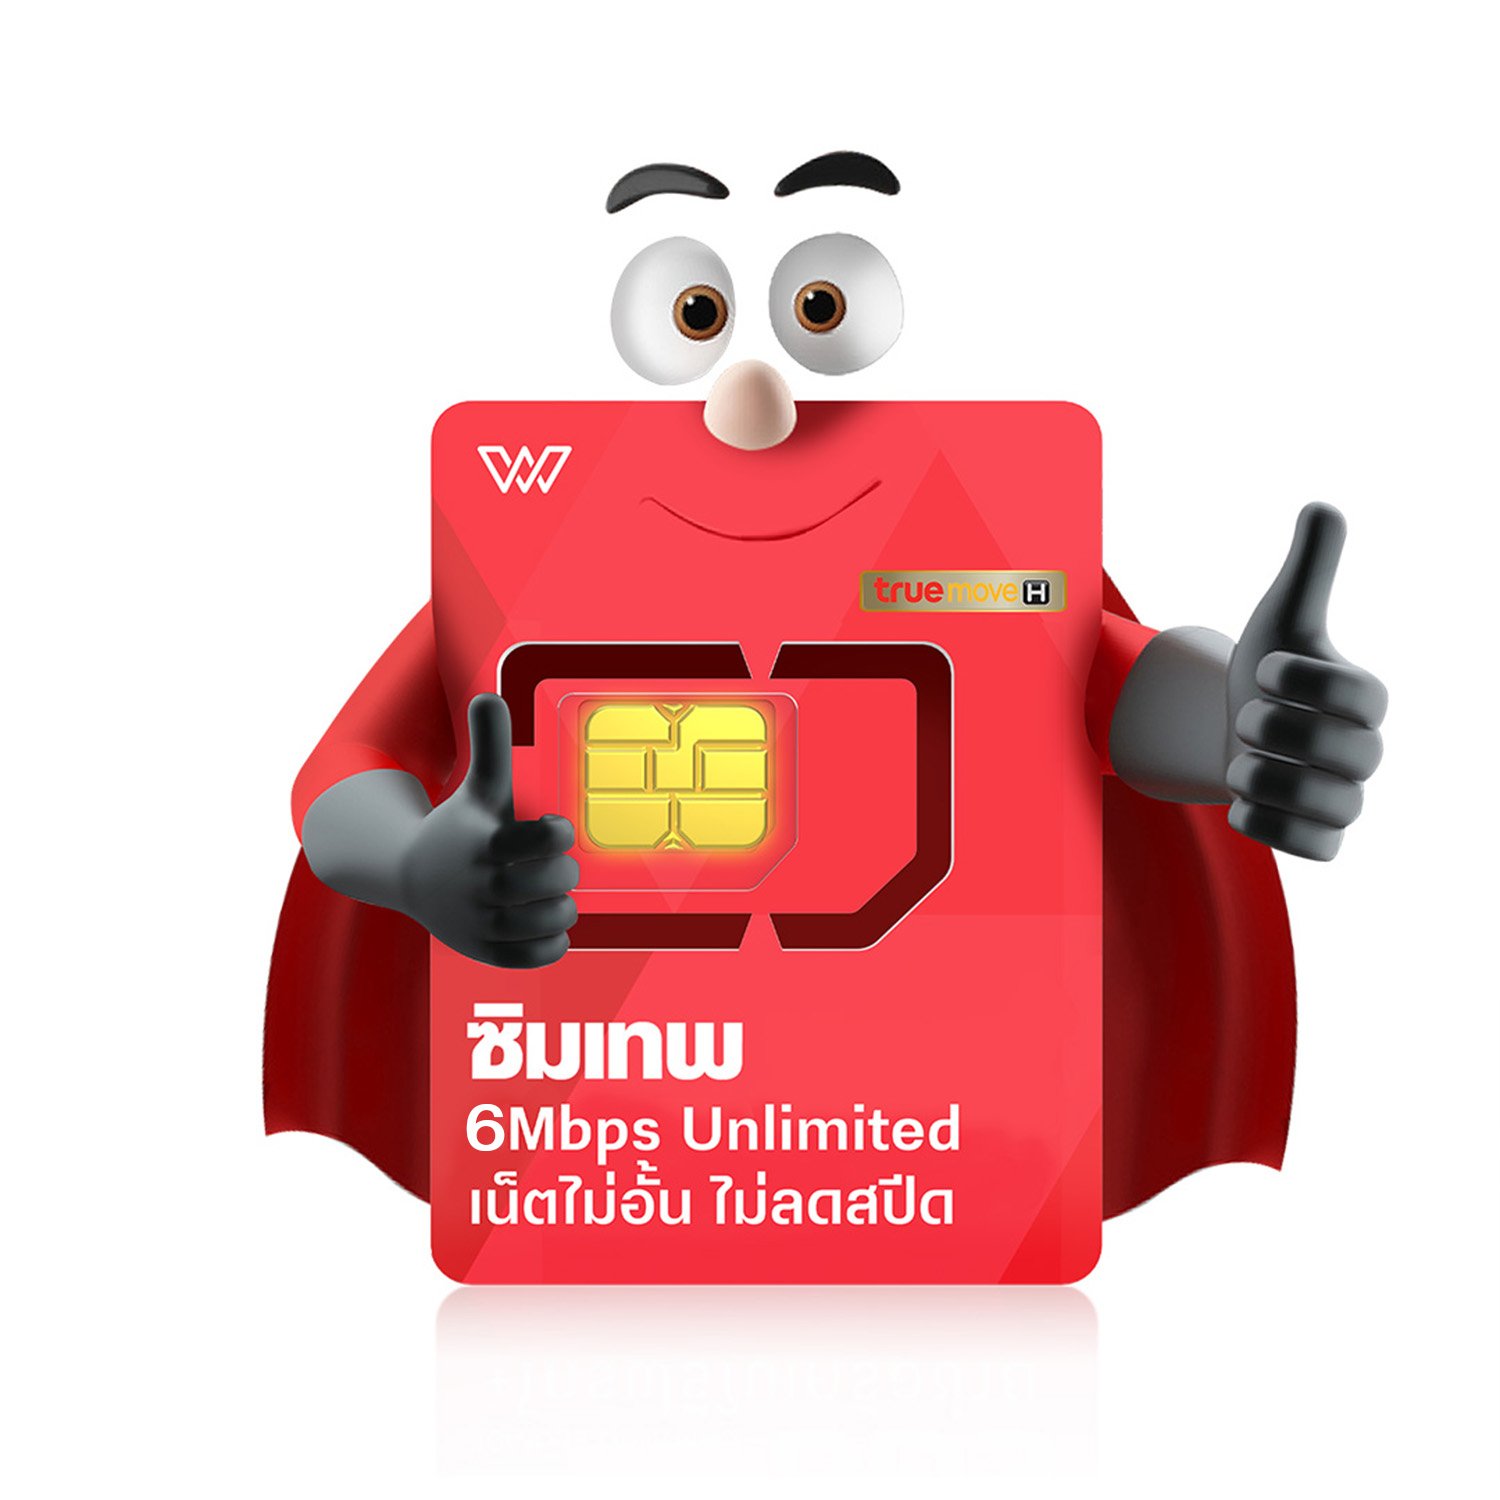 ซิมเทพ 6Mbps เน็ตไม่อั้น เน็ตแรง 6Mbps โทรฟรีทุกค่าย + โทรฟรีในทรู ไม่อั้น ซิมเทพ 4G/5G ซิมเน็ต ซิมรายปี WPN Mobile ส่งฟรี